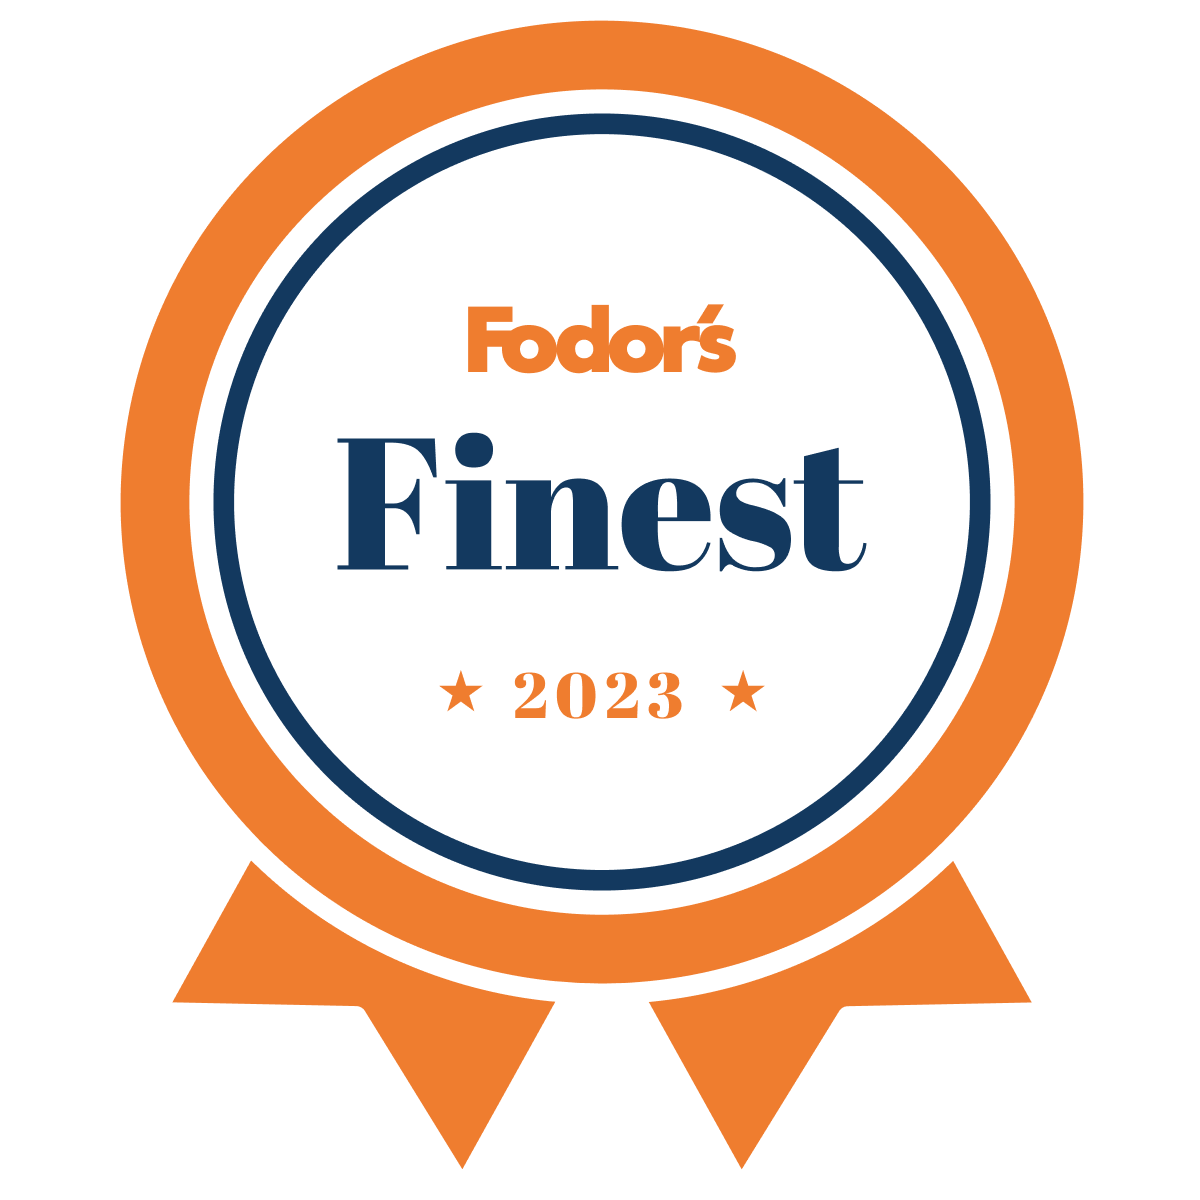 2023 Fodor’s Finest Hotel Awards